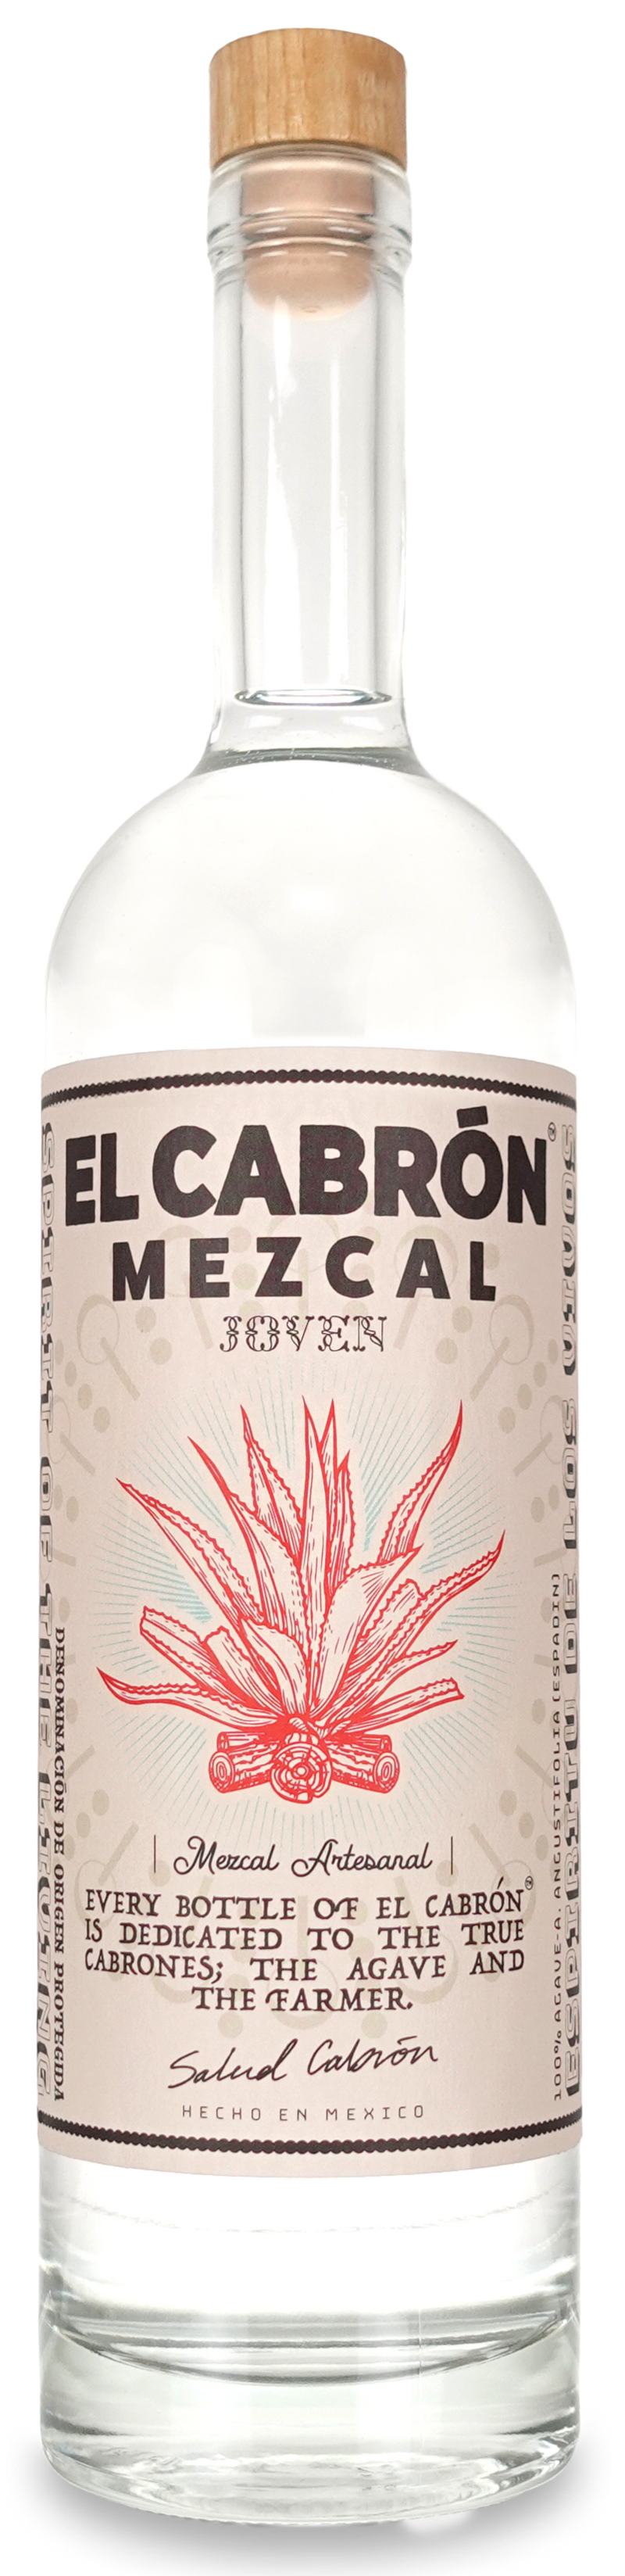 El Cabron Mezcal Joven 70cl + Free El Cabron Tequilana 10cl